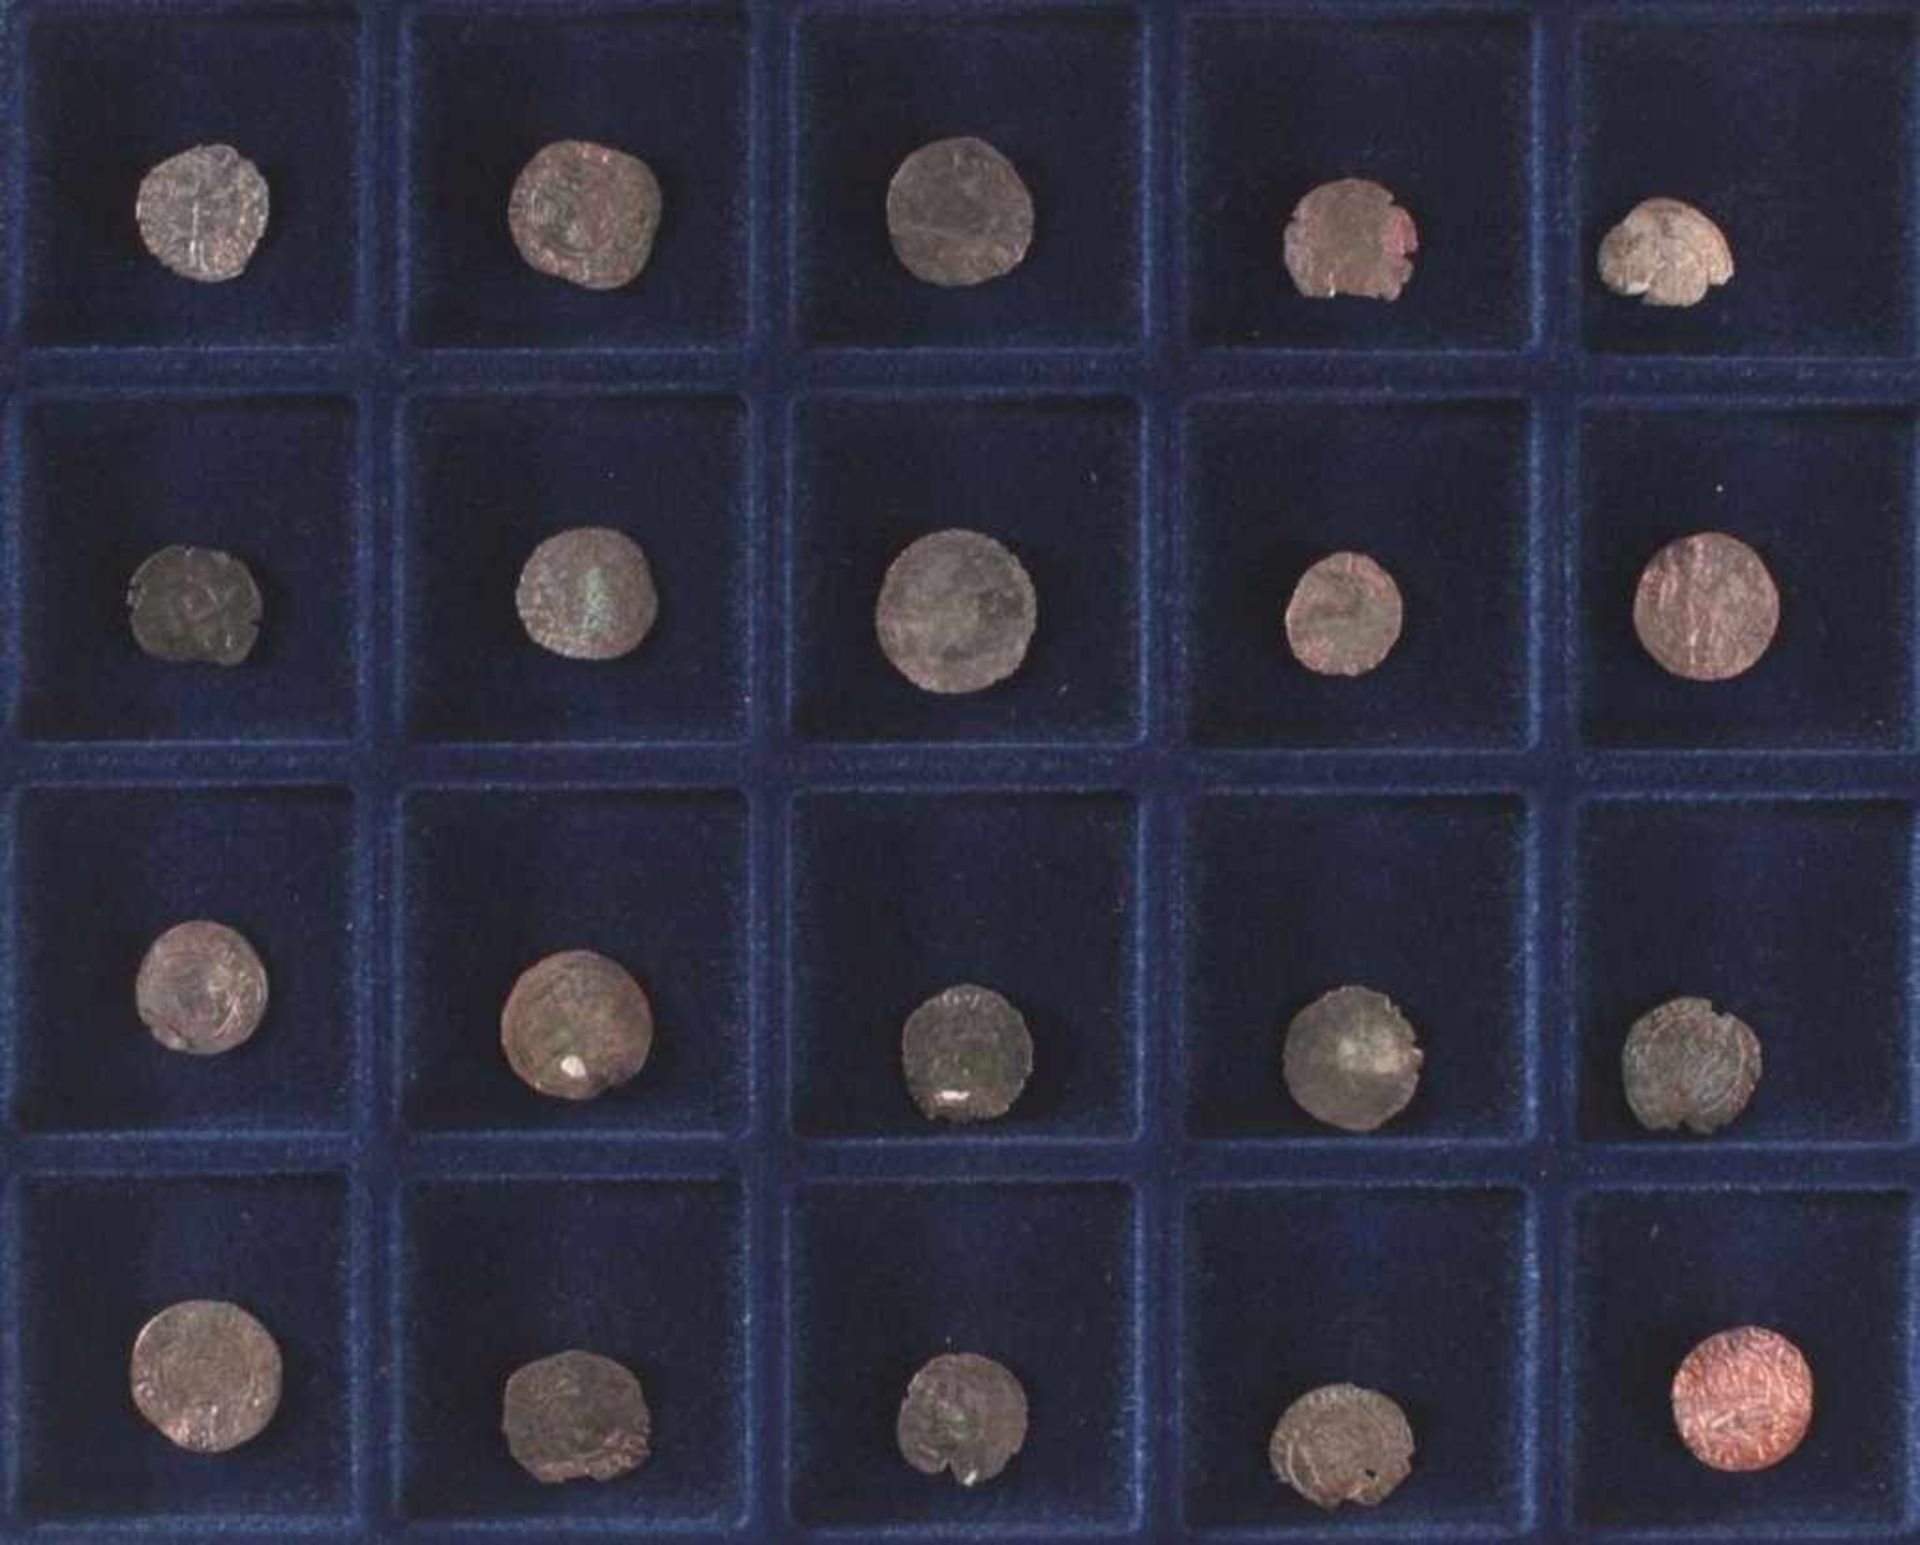 20 Silber- und Kupferfennige aus dem MittelalterBodenfund